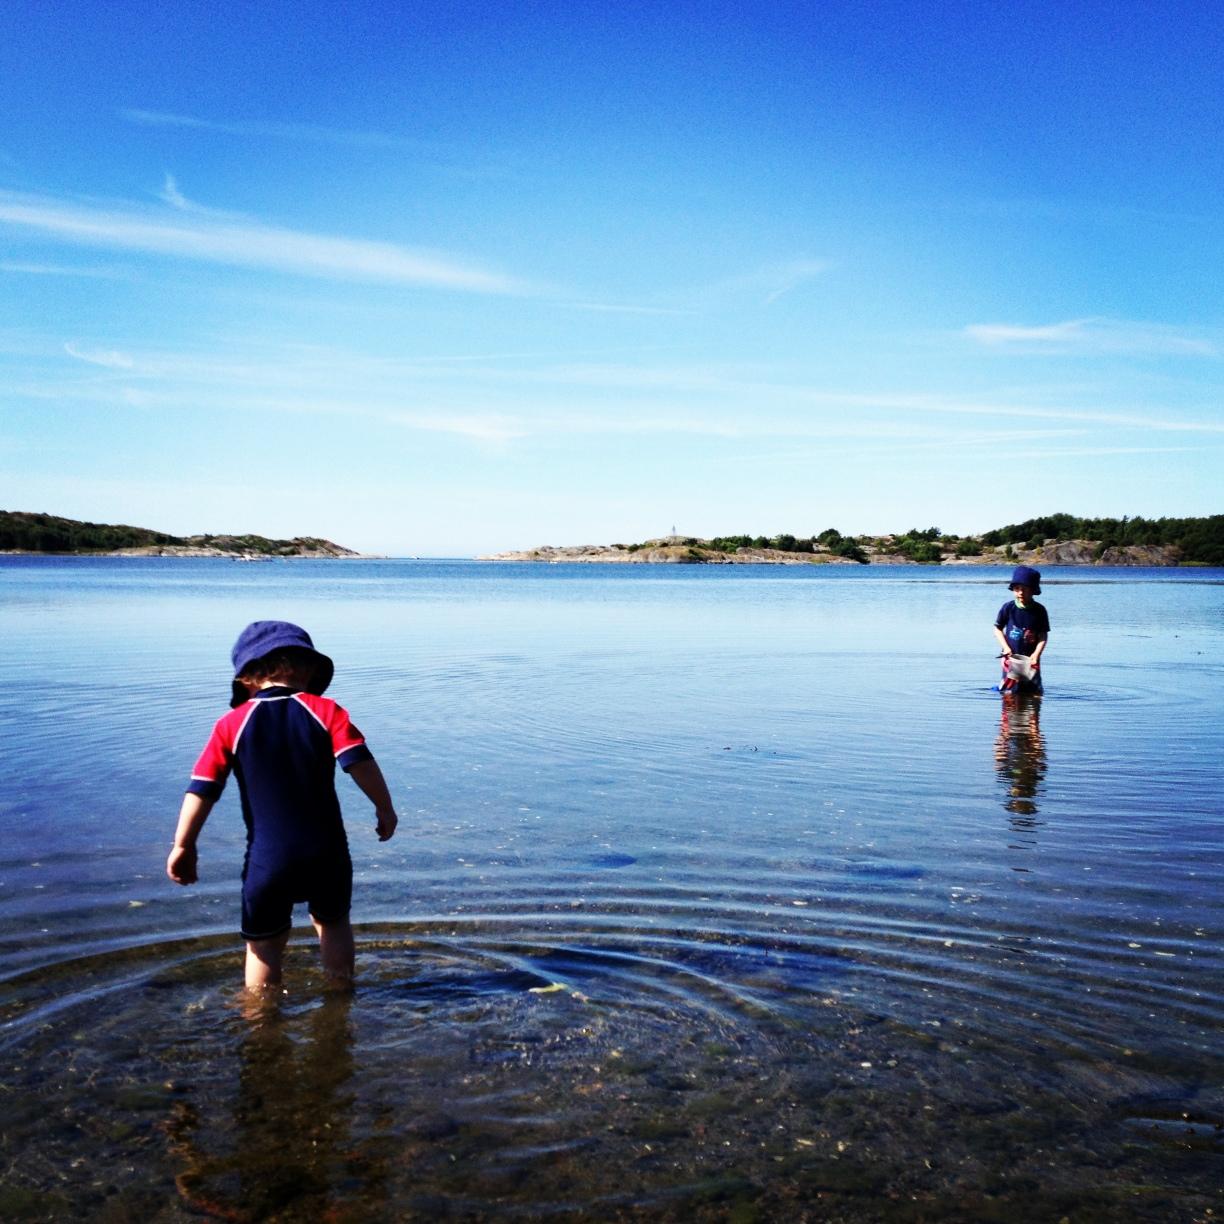 Vårt smultronställe. Syskonen Isak och Philip badar i Kungsviken på Amundsön utanför Göteborg, skriver Anna.